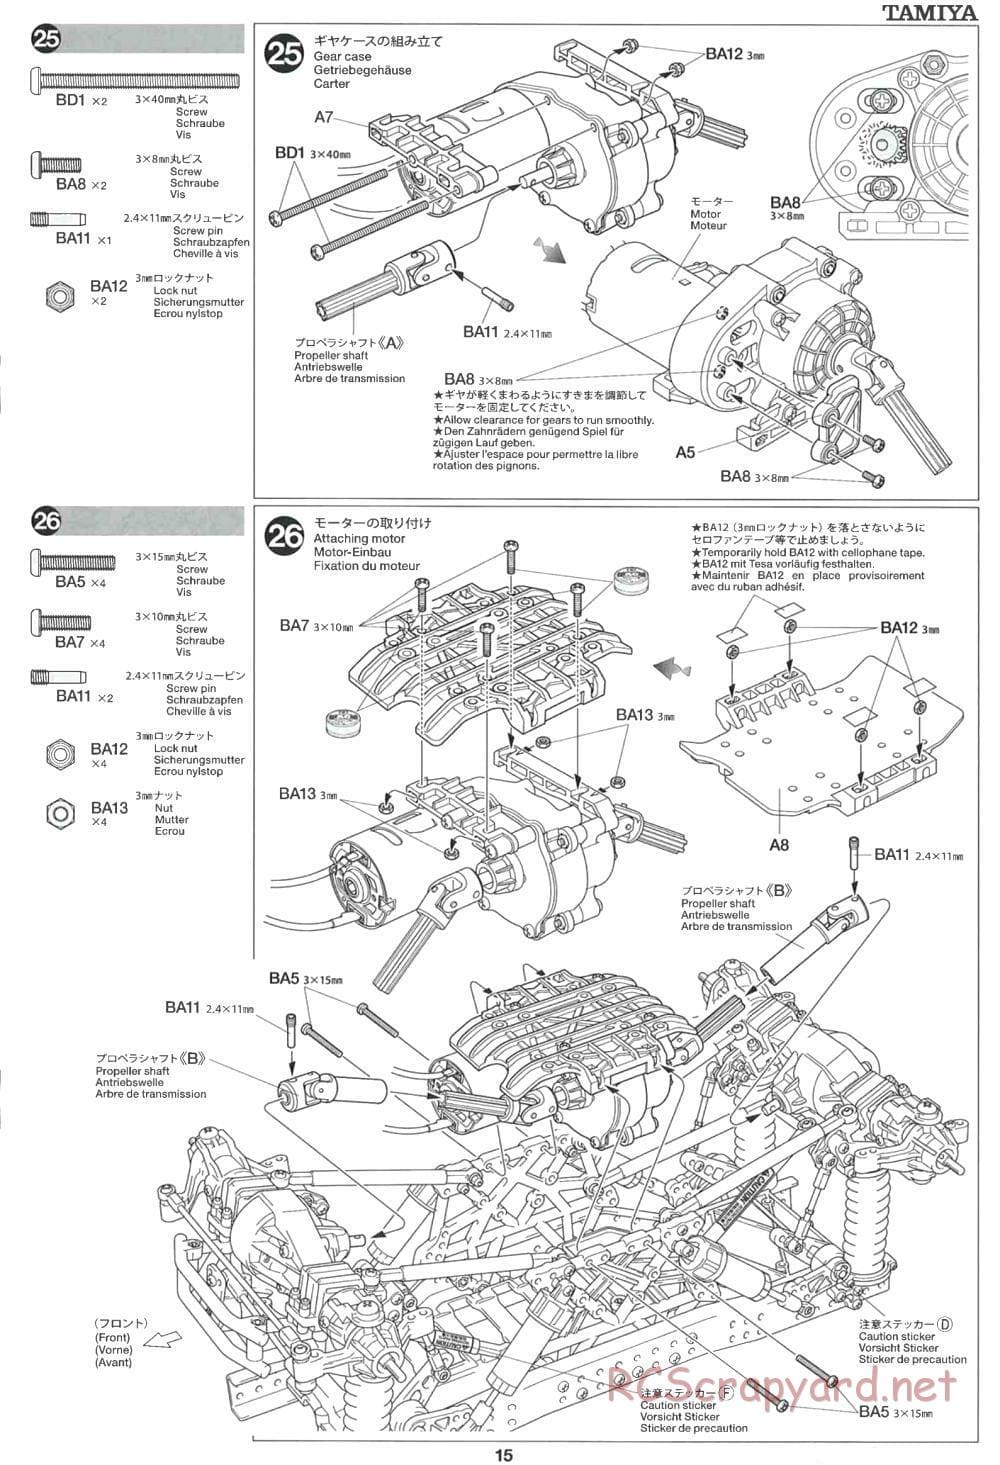 Tamiya - CR-01 Chassis - Manual - Page 15